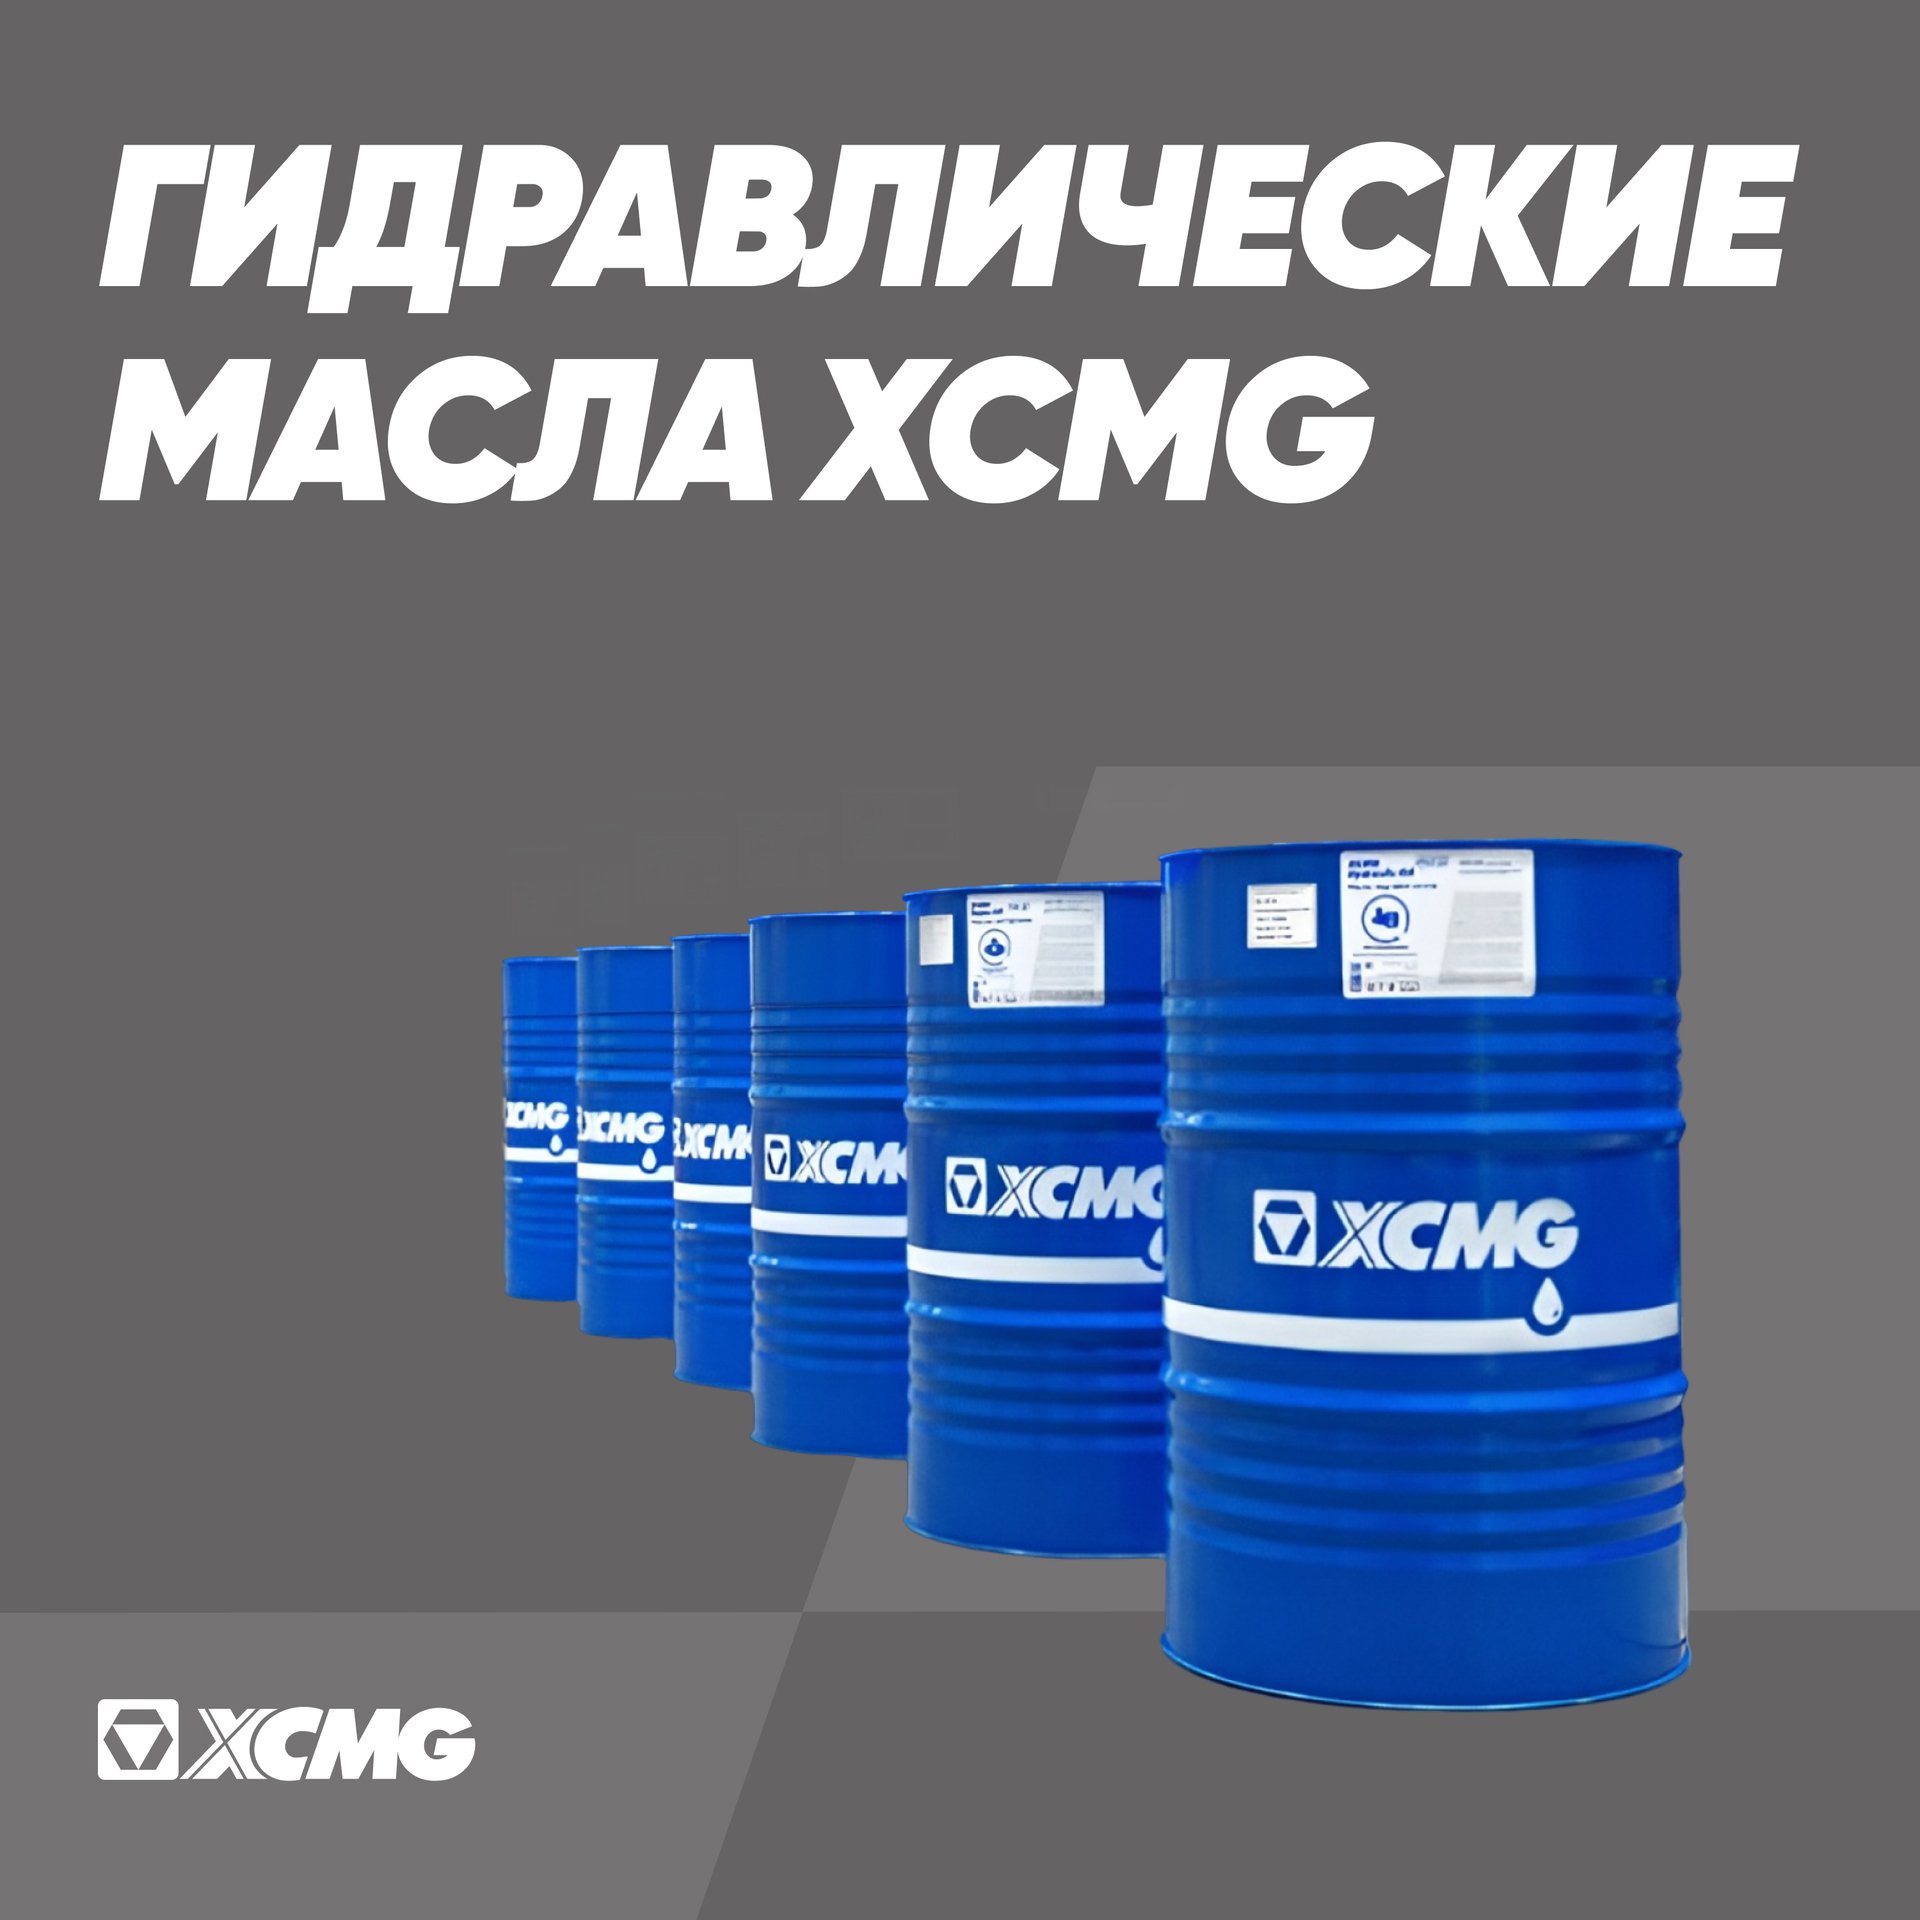 Гидравлические масла XCMG